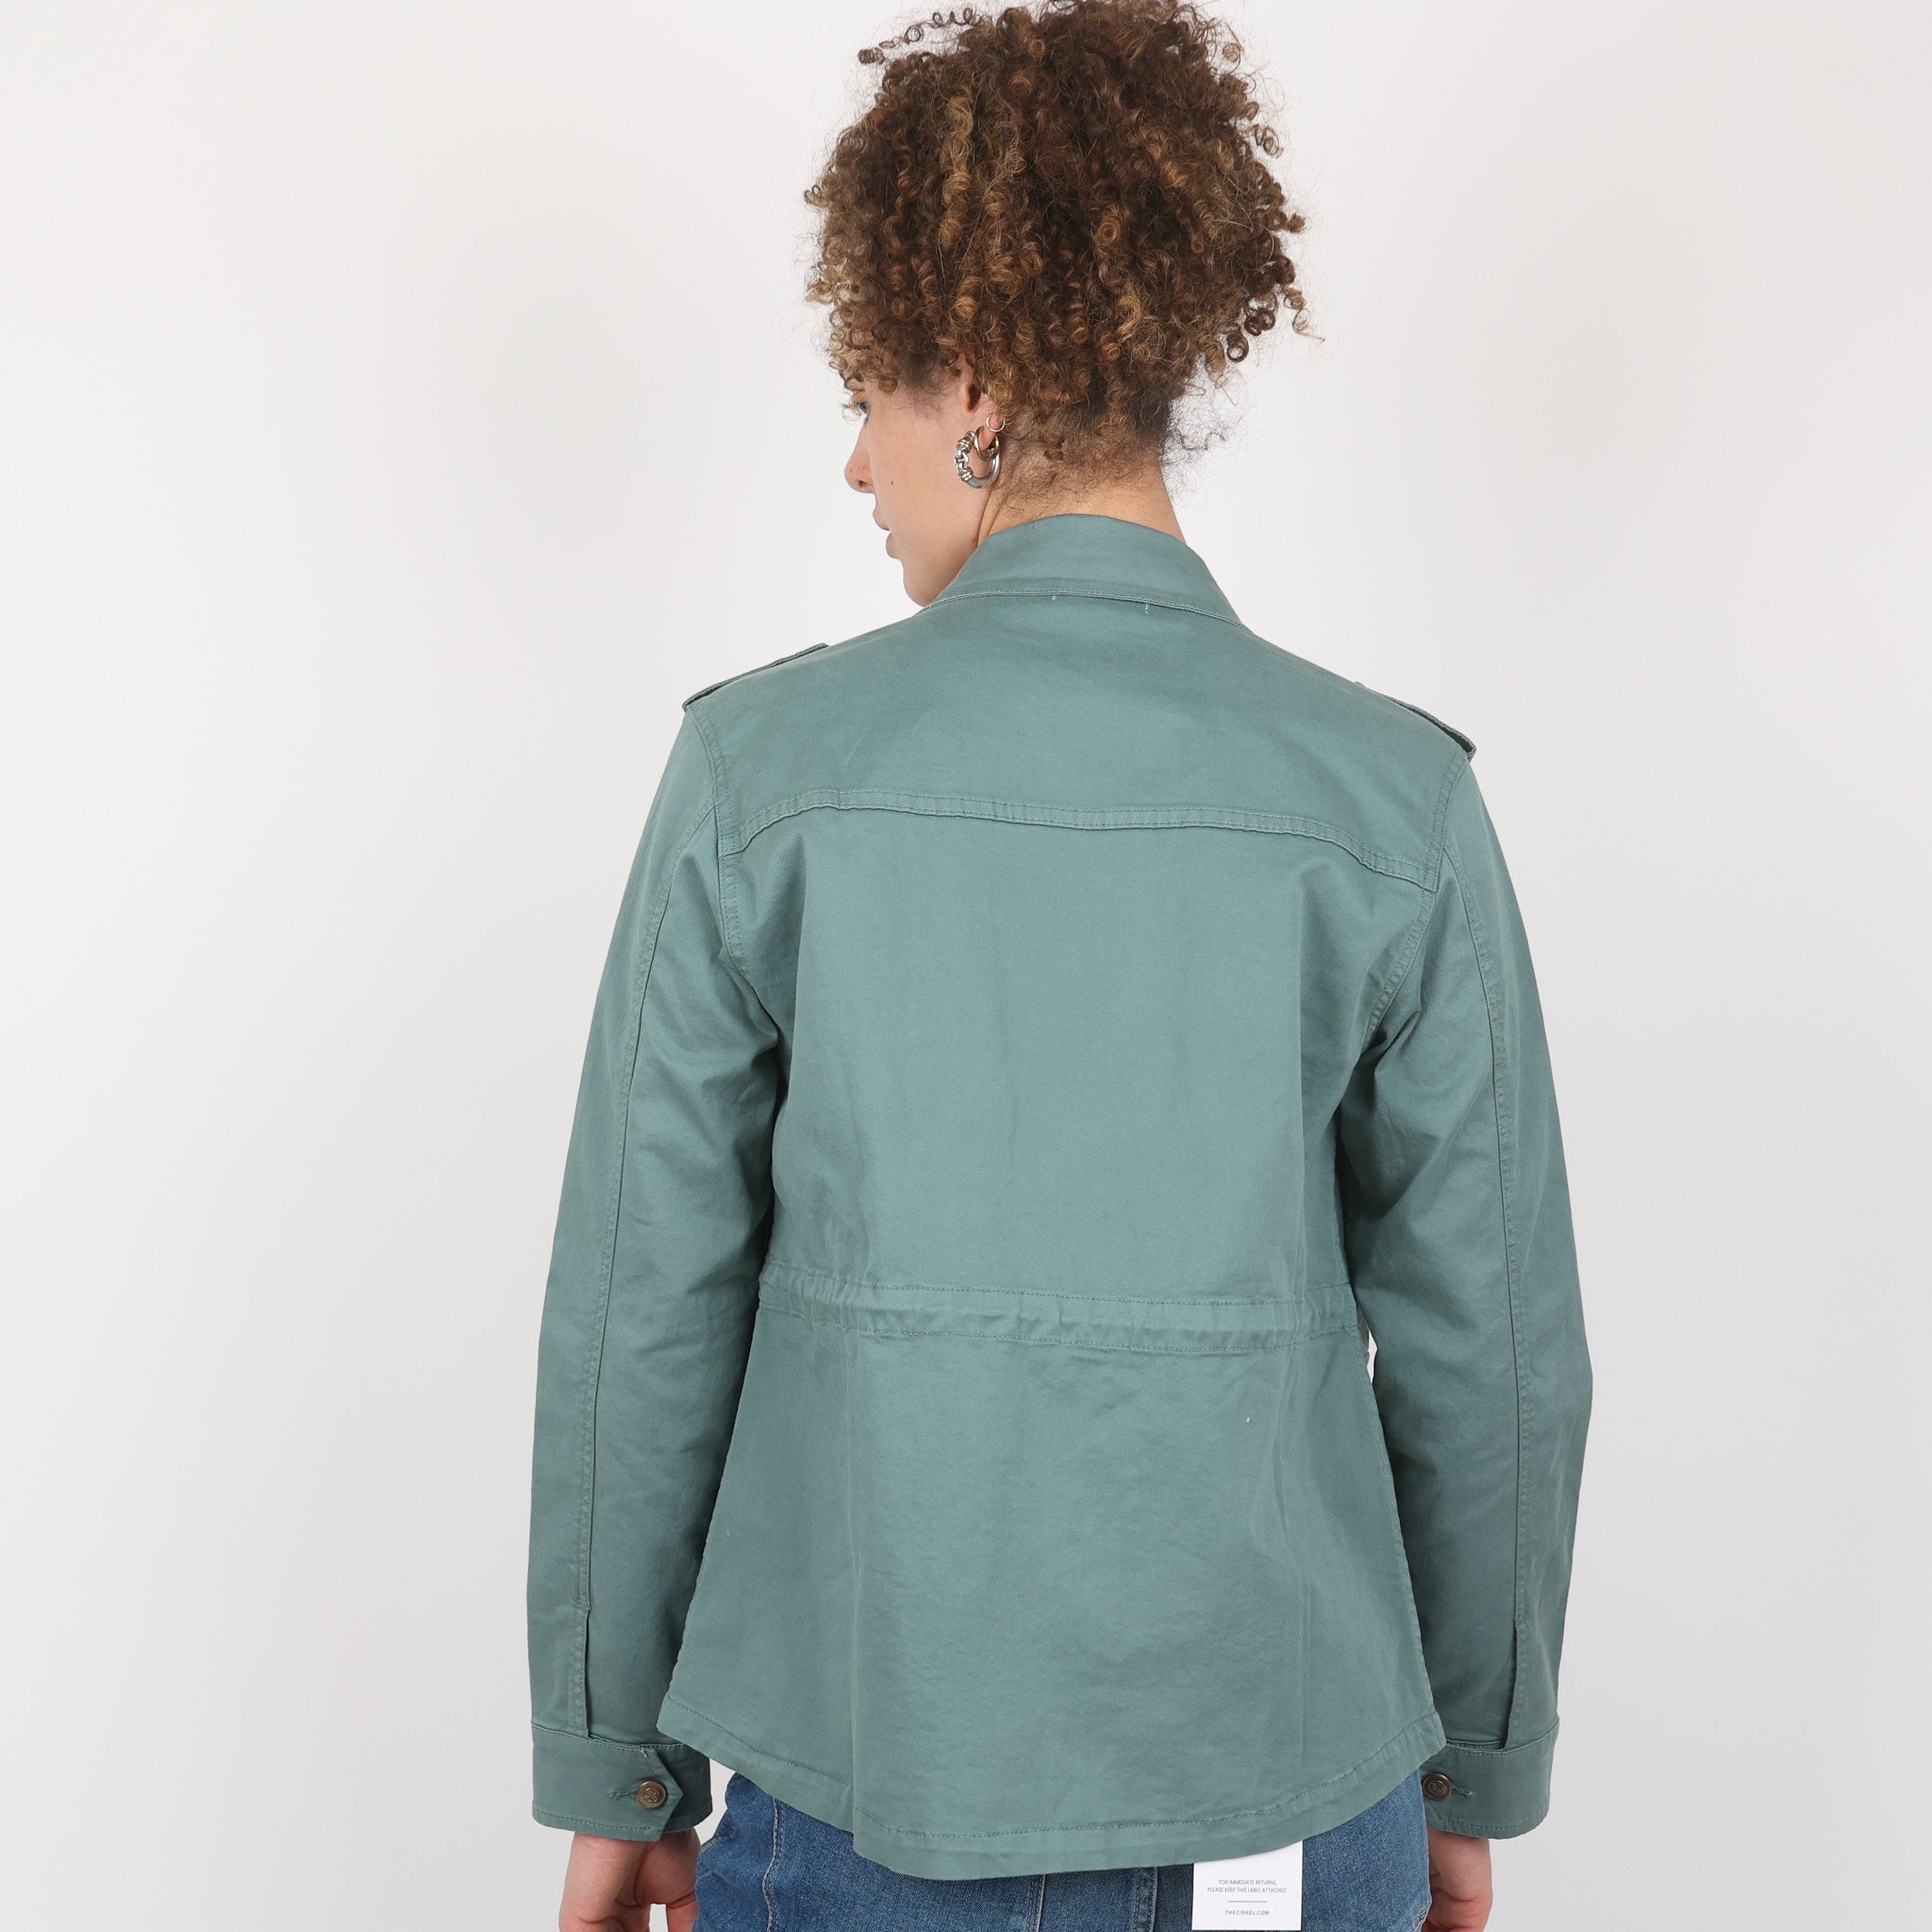 Jacket, UK Size 12